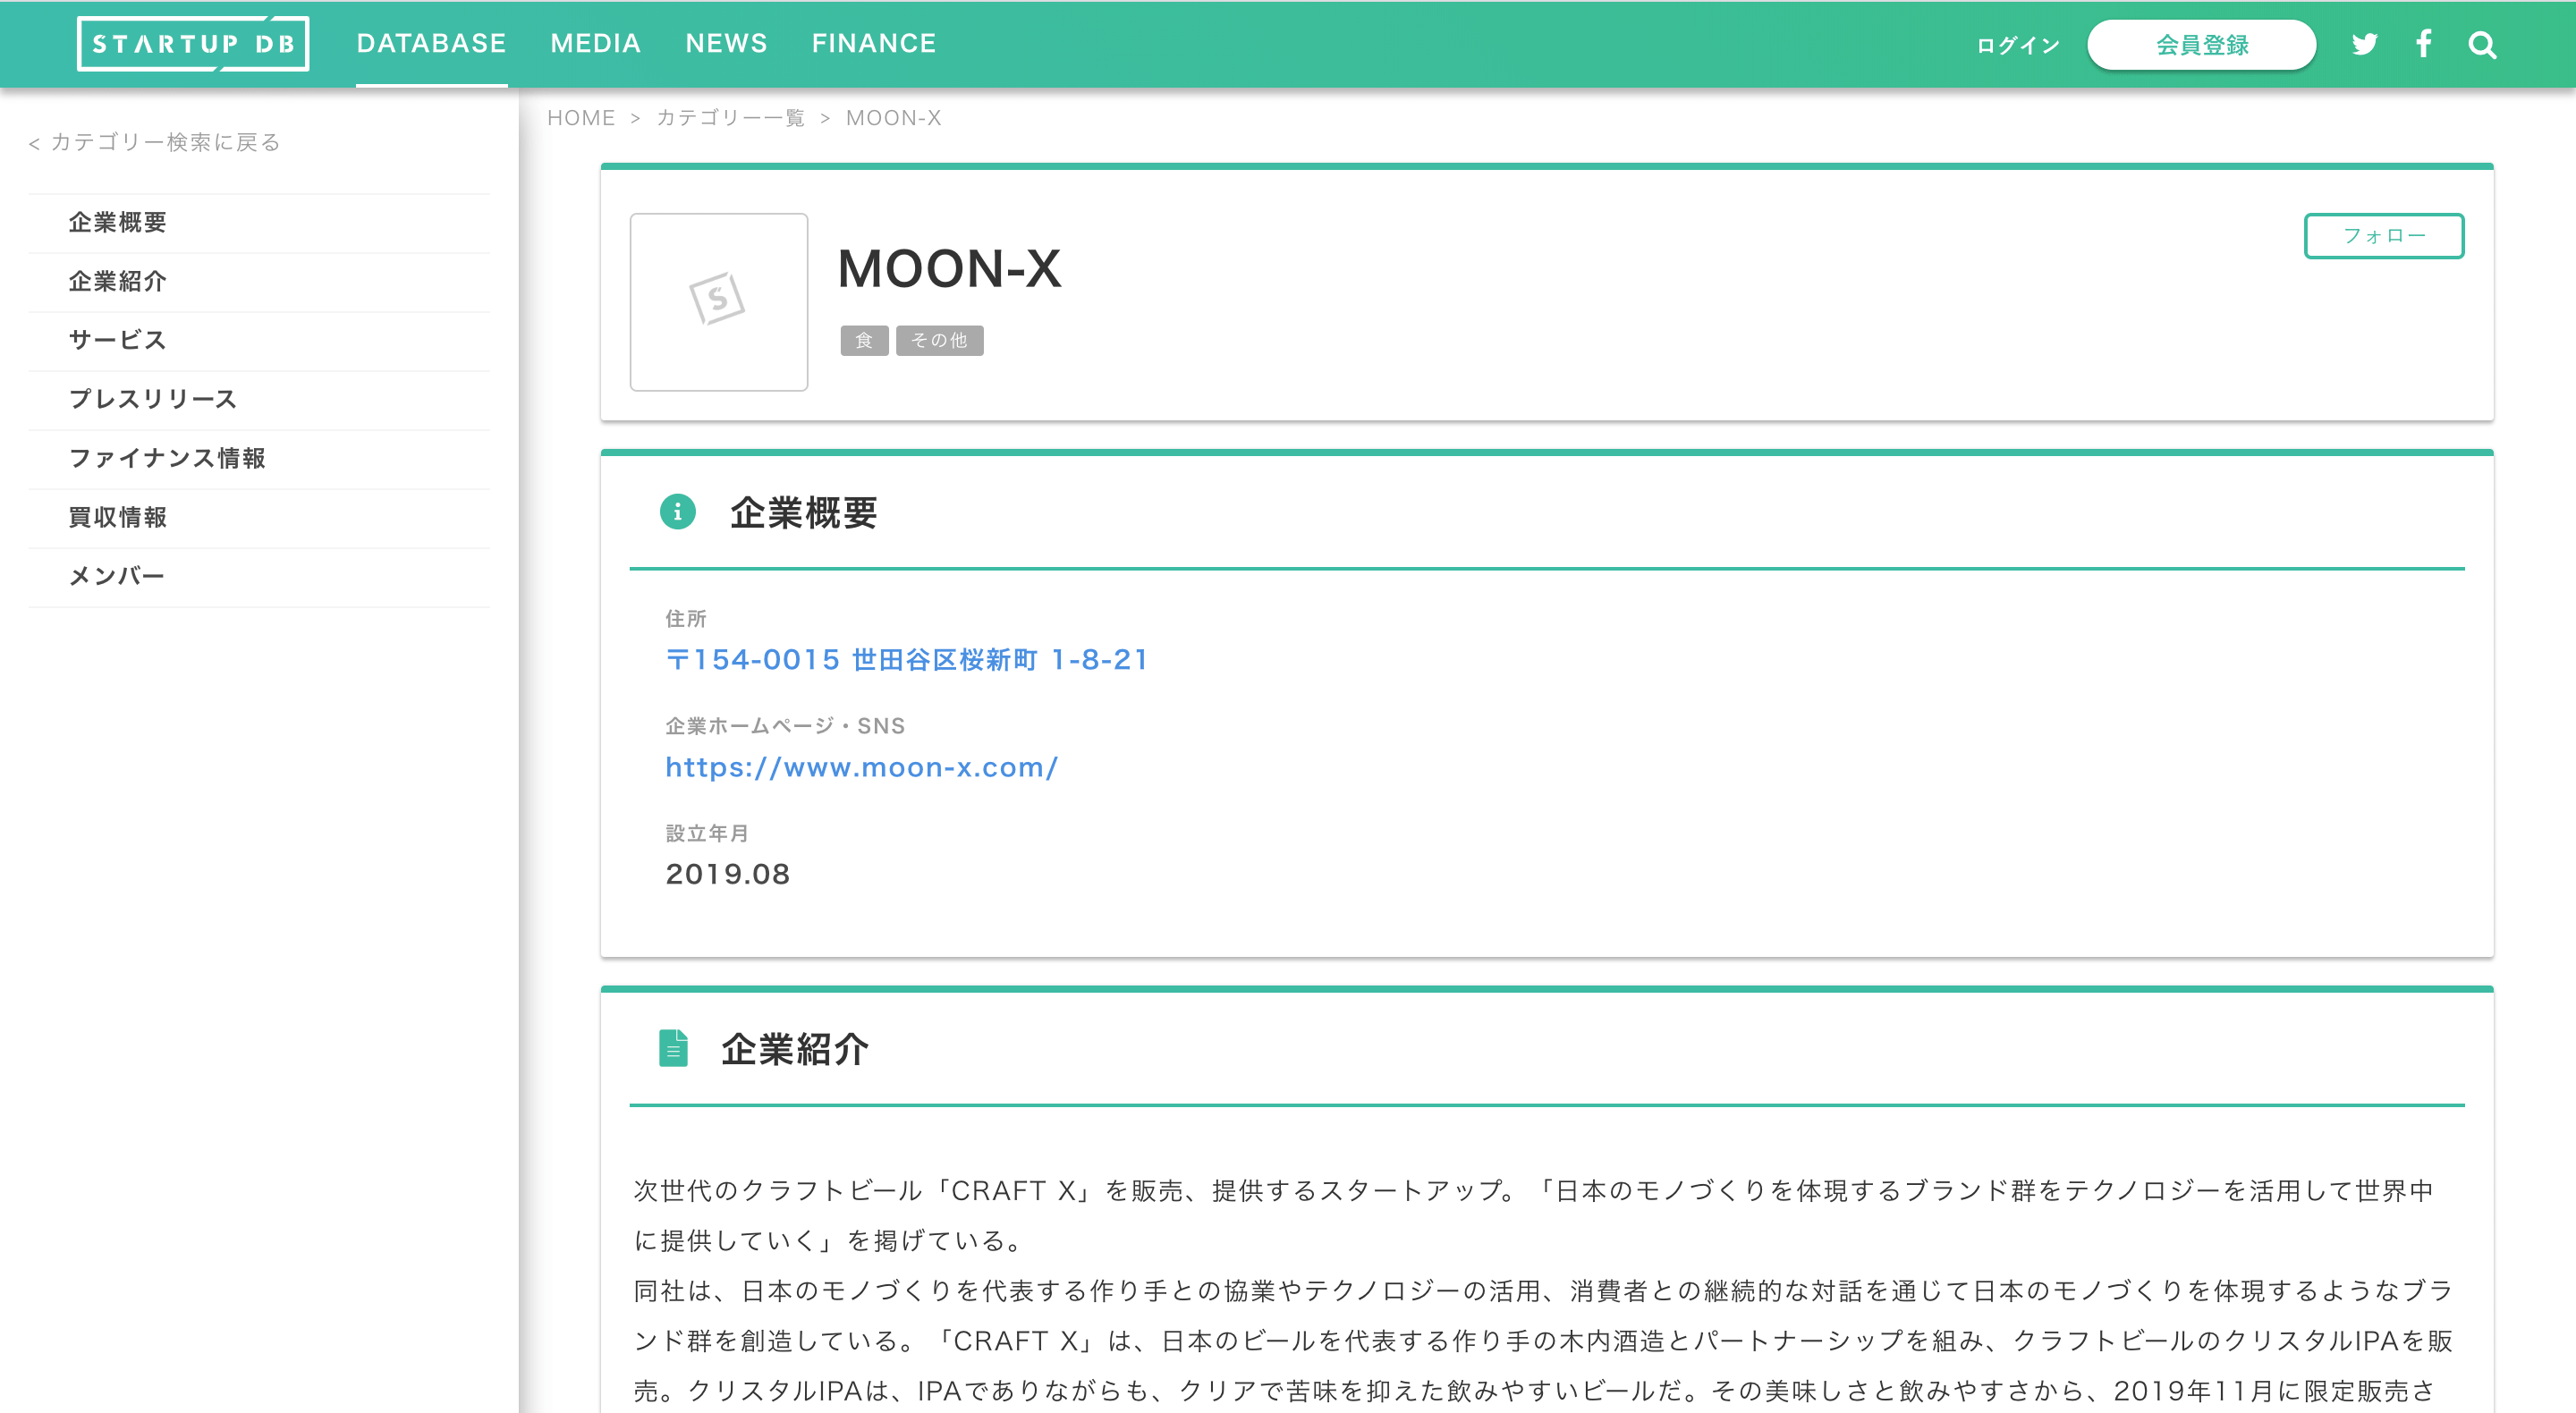 MOON-X